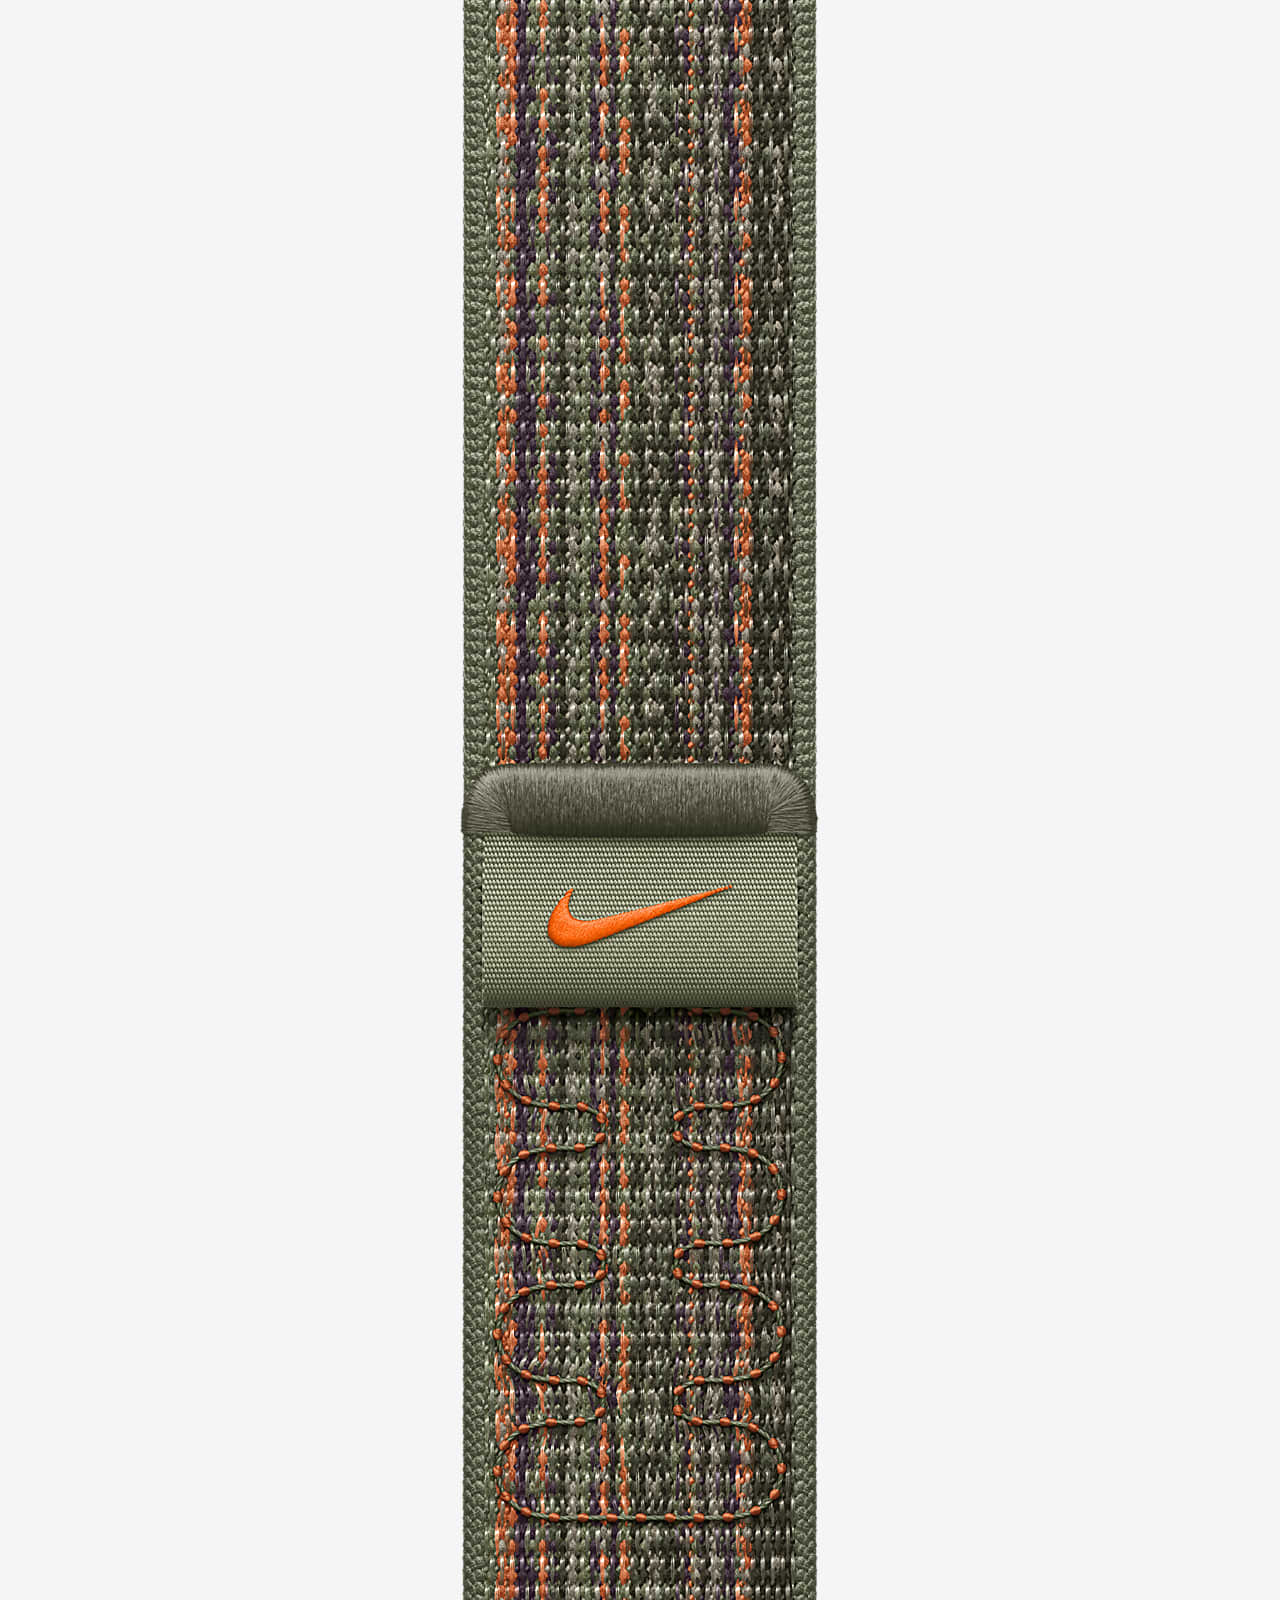 45mm Sequoia/Orange Nike Sport Loop